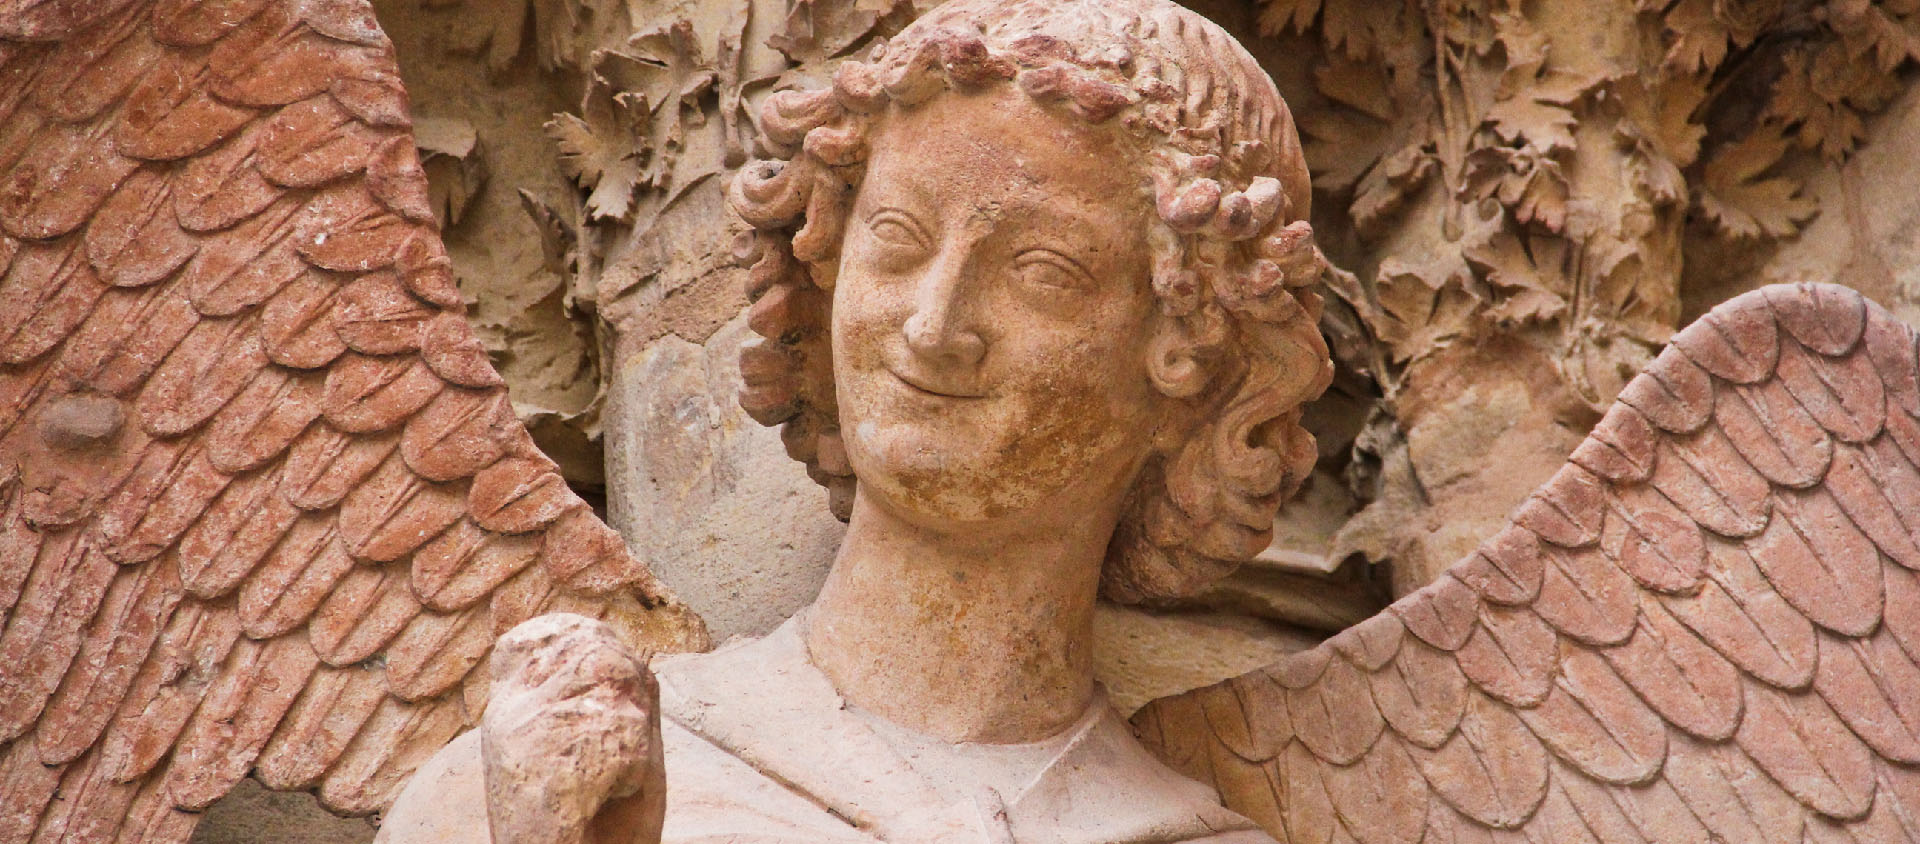 L'ange au sourire, statue présente sur la Cathédrale de Reims | © Eric Santos/Wikipedia Commons/CC BY 3.0